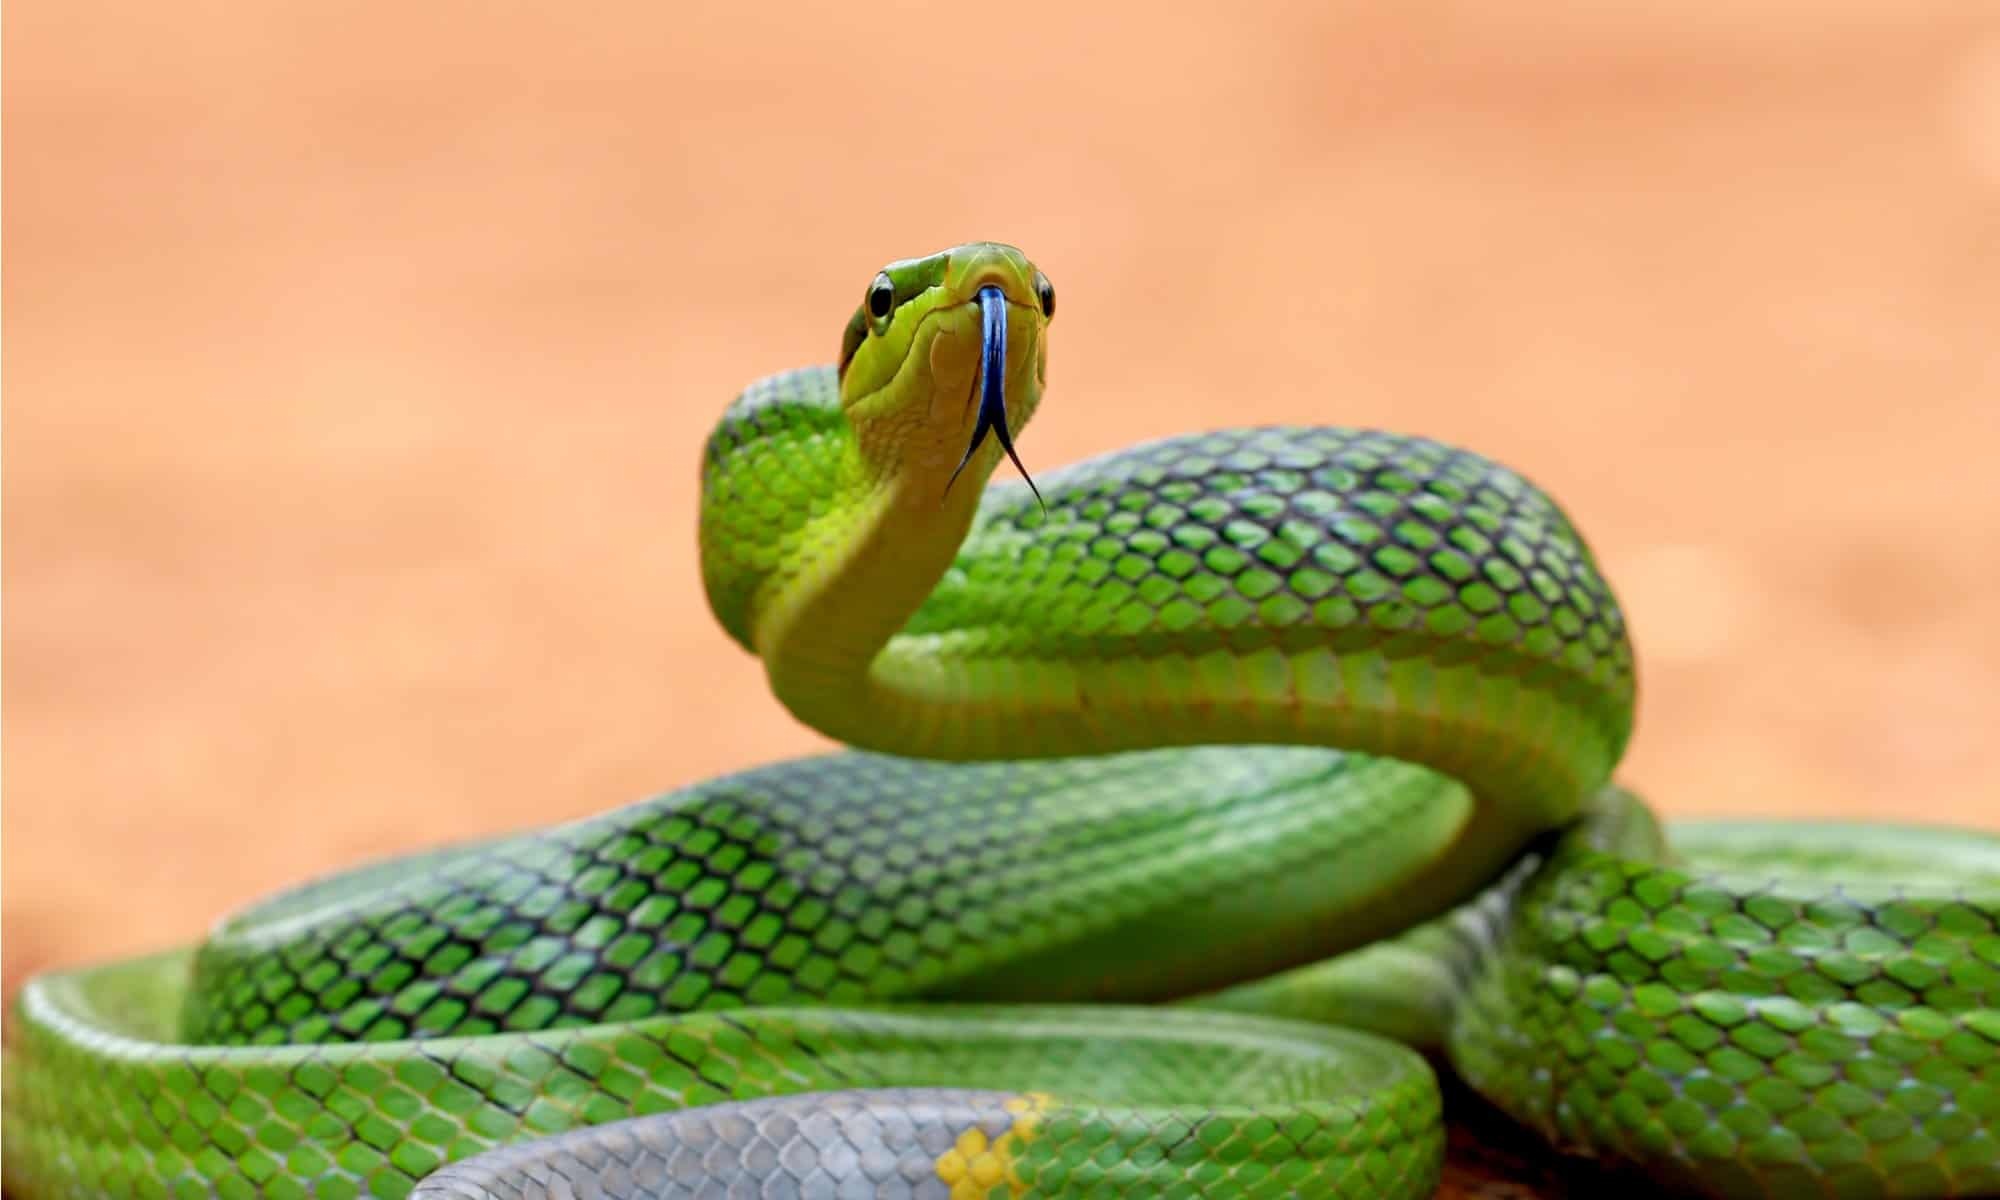 Loài rắn mang tên gọi đáng sợ và giống hệt rắn độc nhưng vô hại